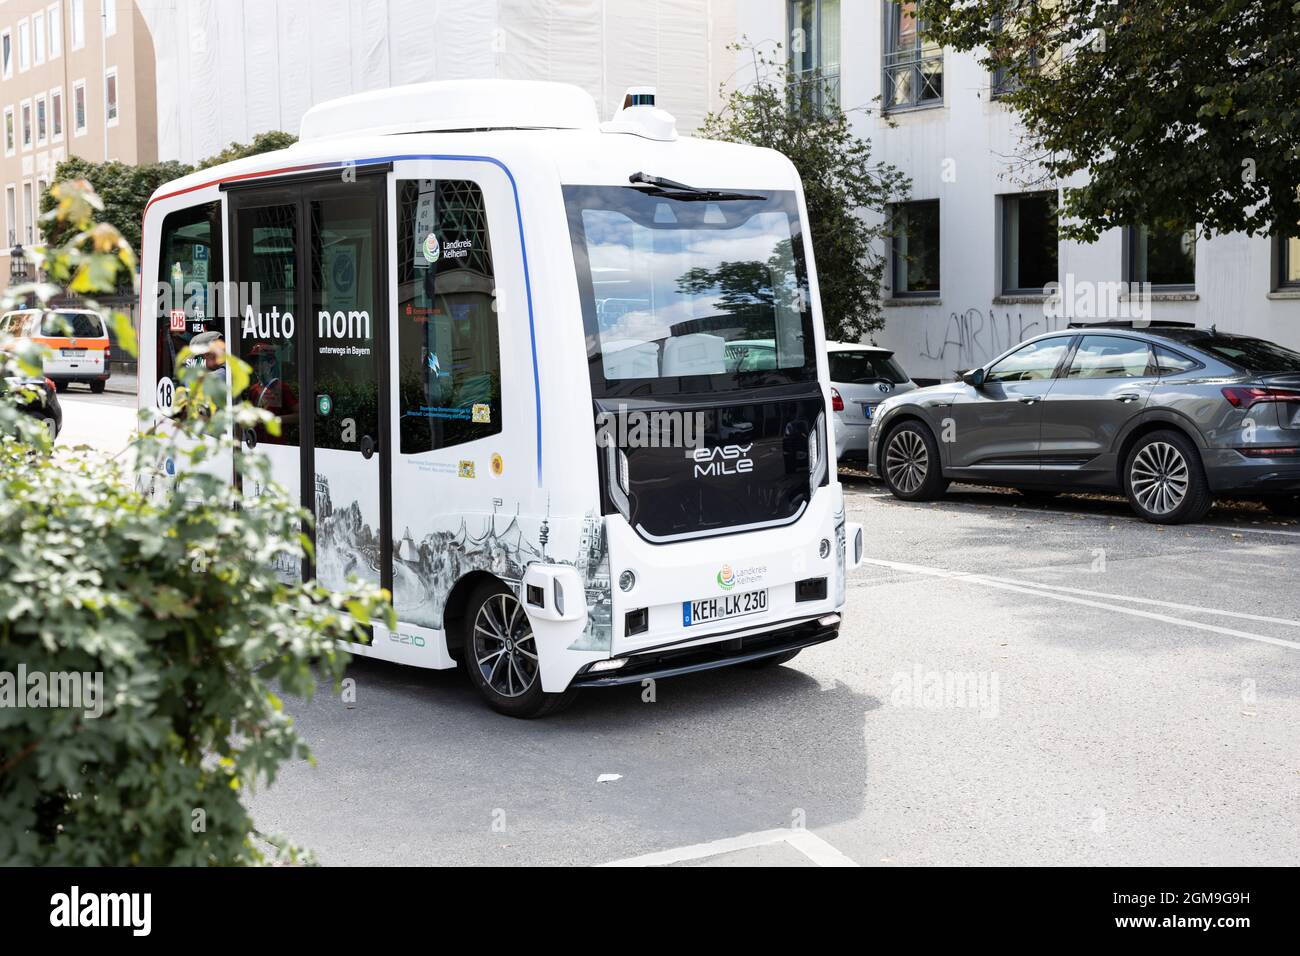 München, 12. September 2021: Autonomer Minibus der Firma easy Mile wird auf der Automobilmesse IAA Mobility in München eingesetzt. Die s Stockfoto